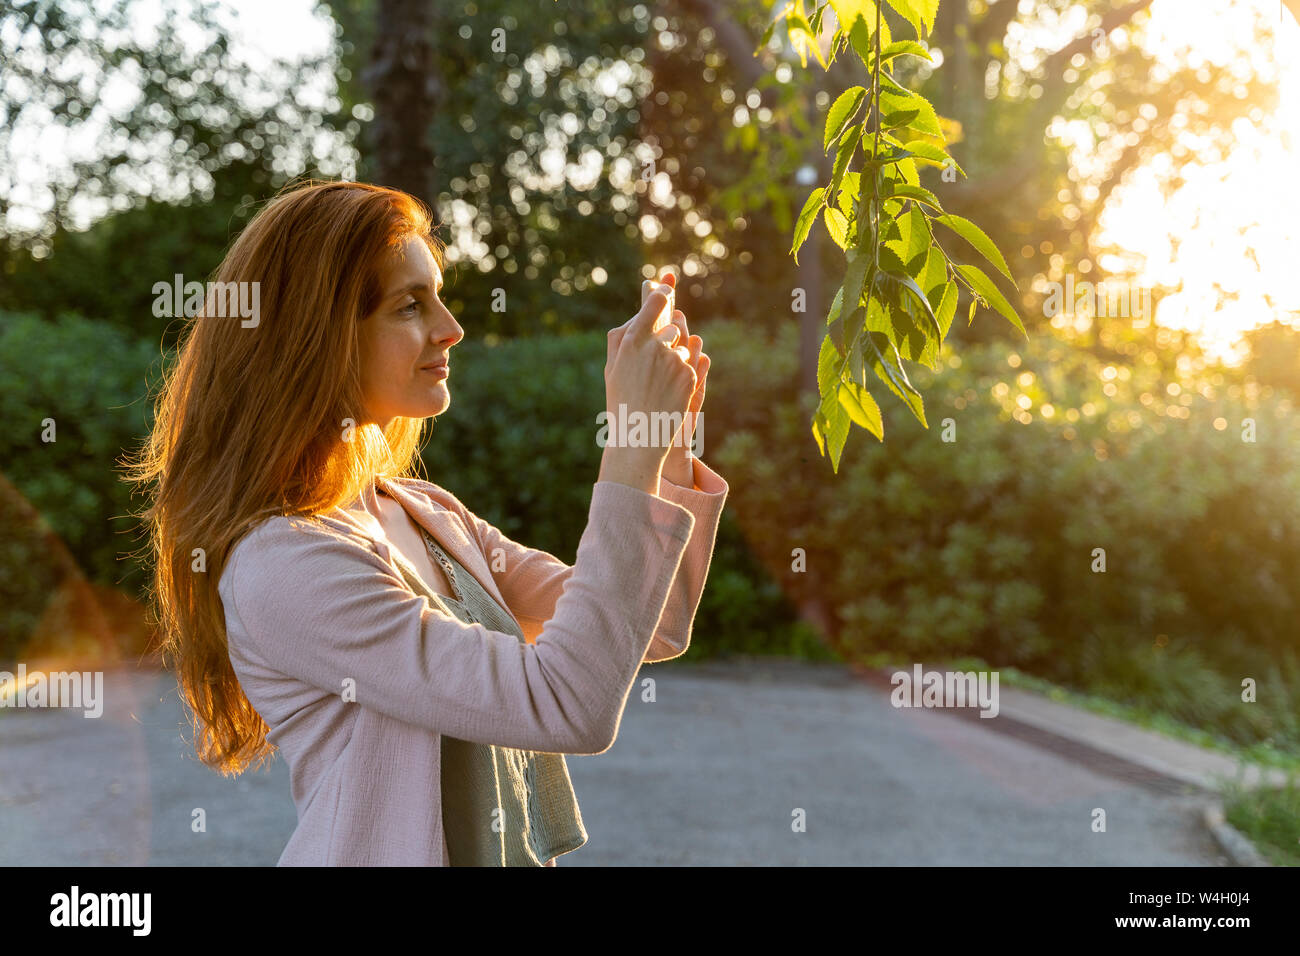 Jeune femme rousse de prendre une photo des feuilles dans un parc Banque D'Images